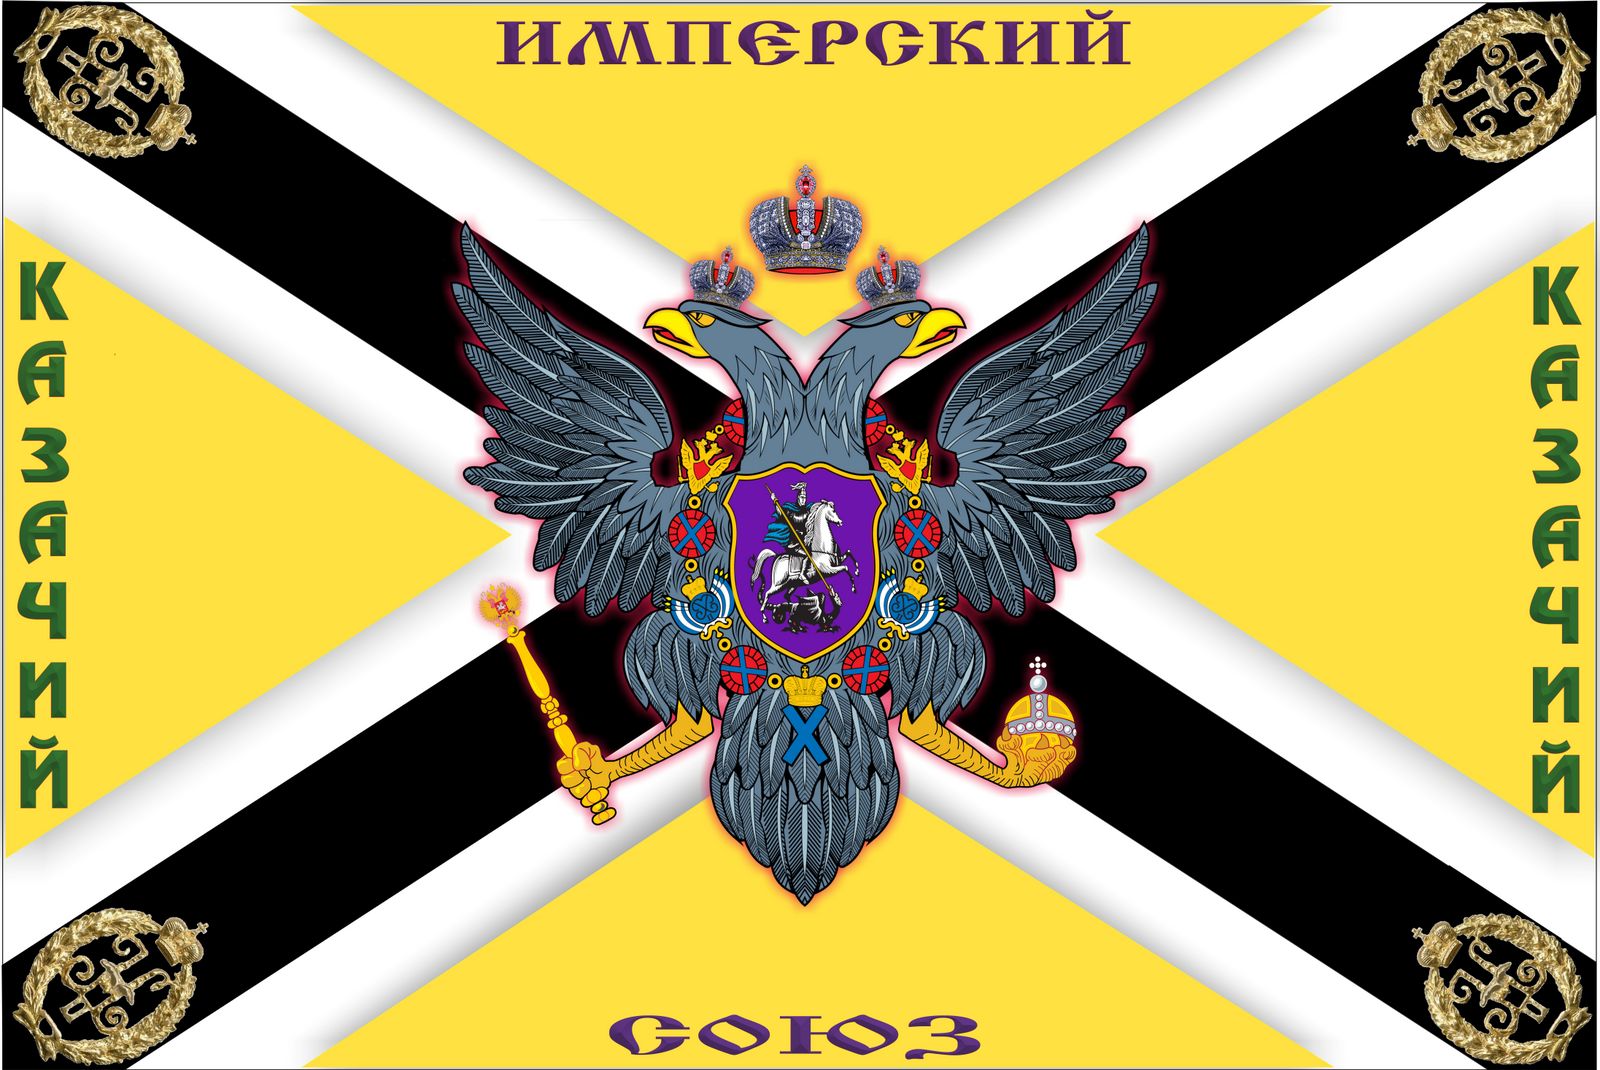 Флаг Имперского казачьего союза